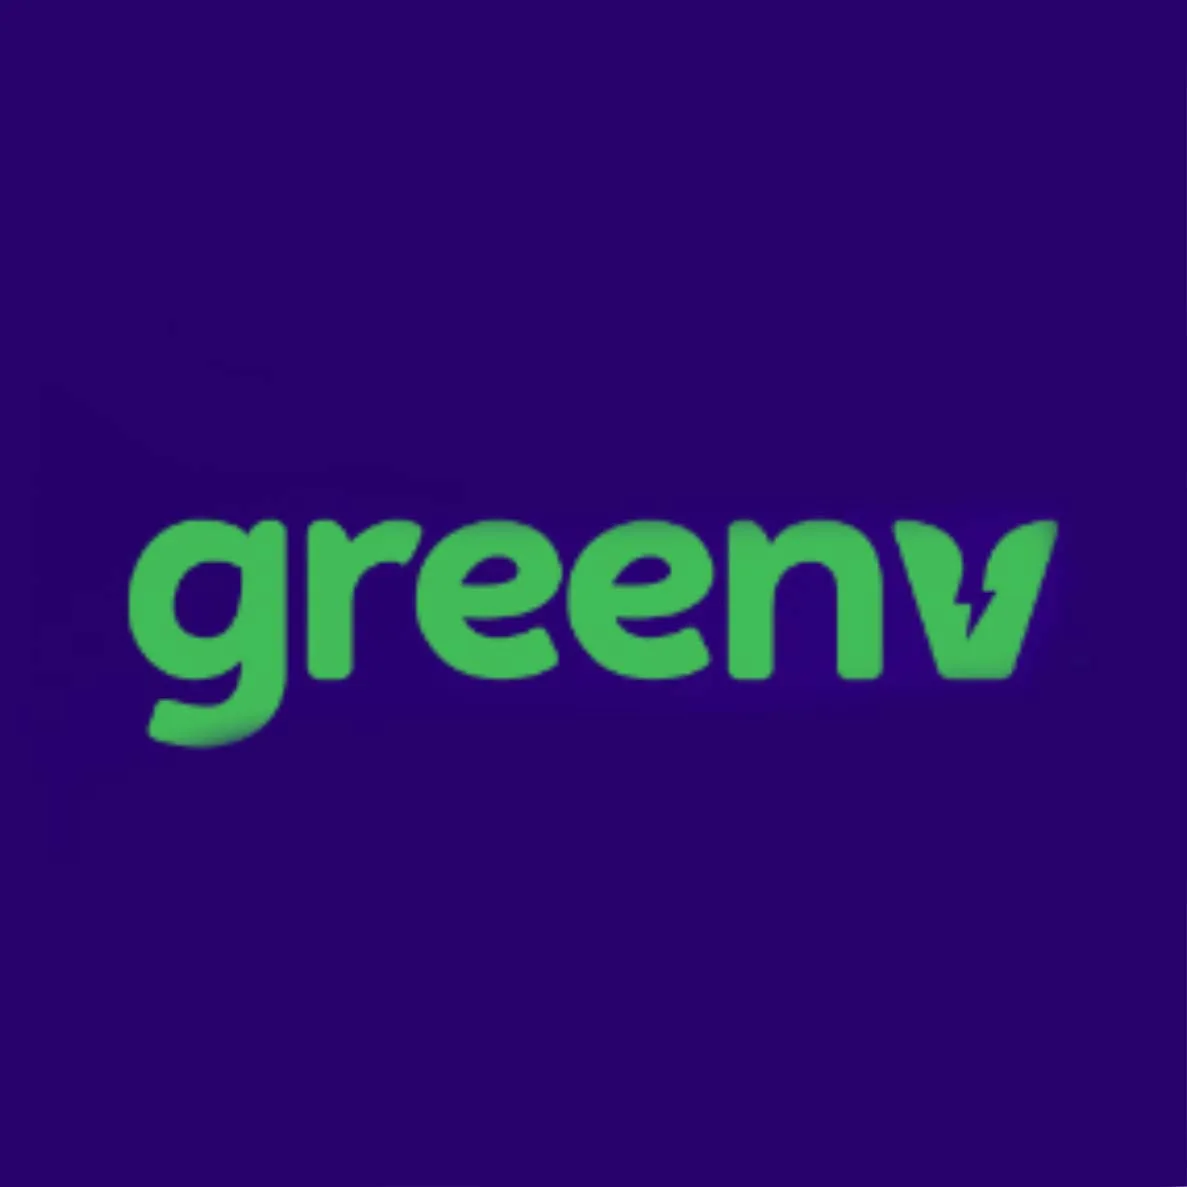 greenv